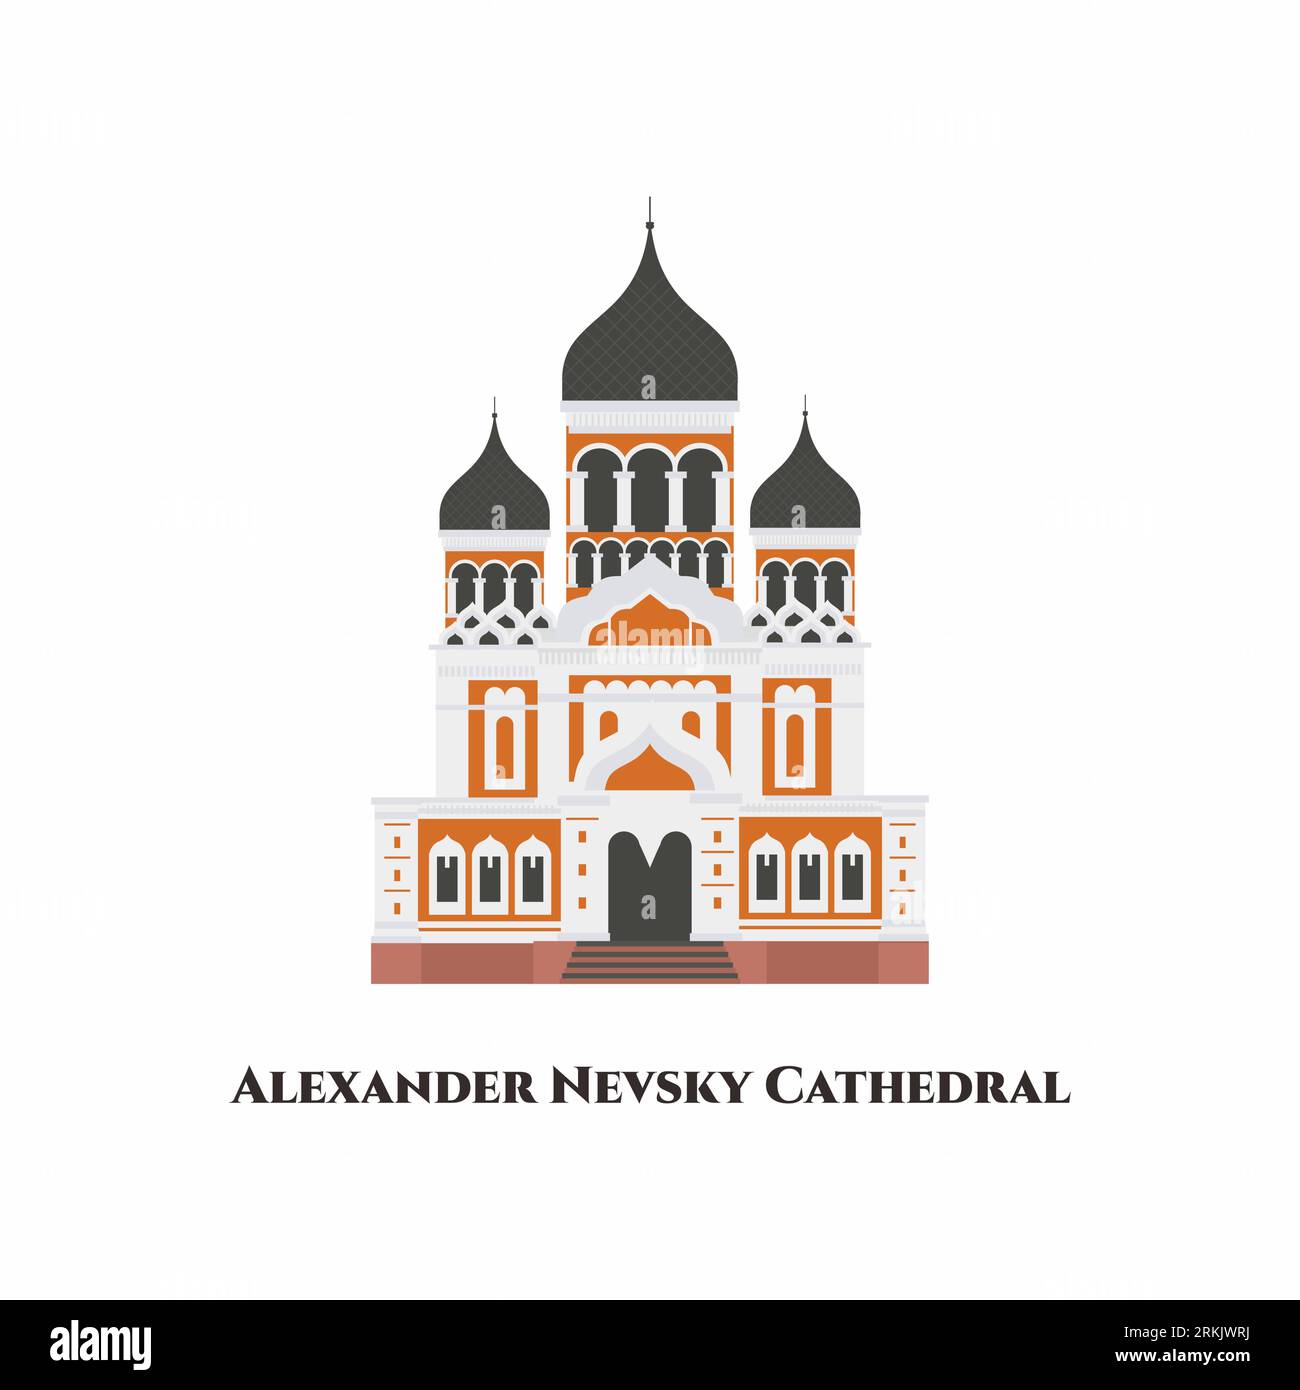 St. Cathédrale Alexandre Nevsky. C'est une cathédrale orthodoxe bulgare à Sofia, la capitale de la Bulgarie. Ce sont des bâtiments étonnants avec une architecture ancienne. Illustration de Vecteur